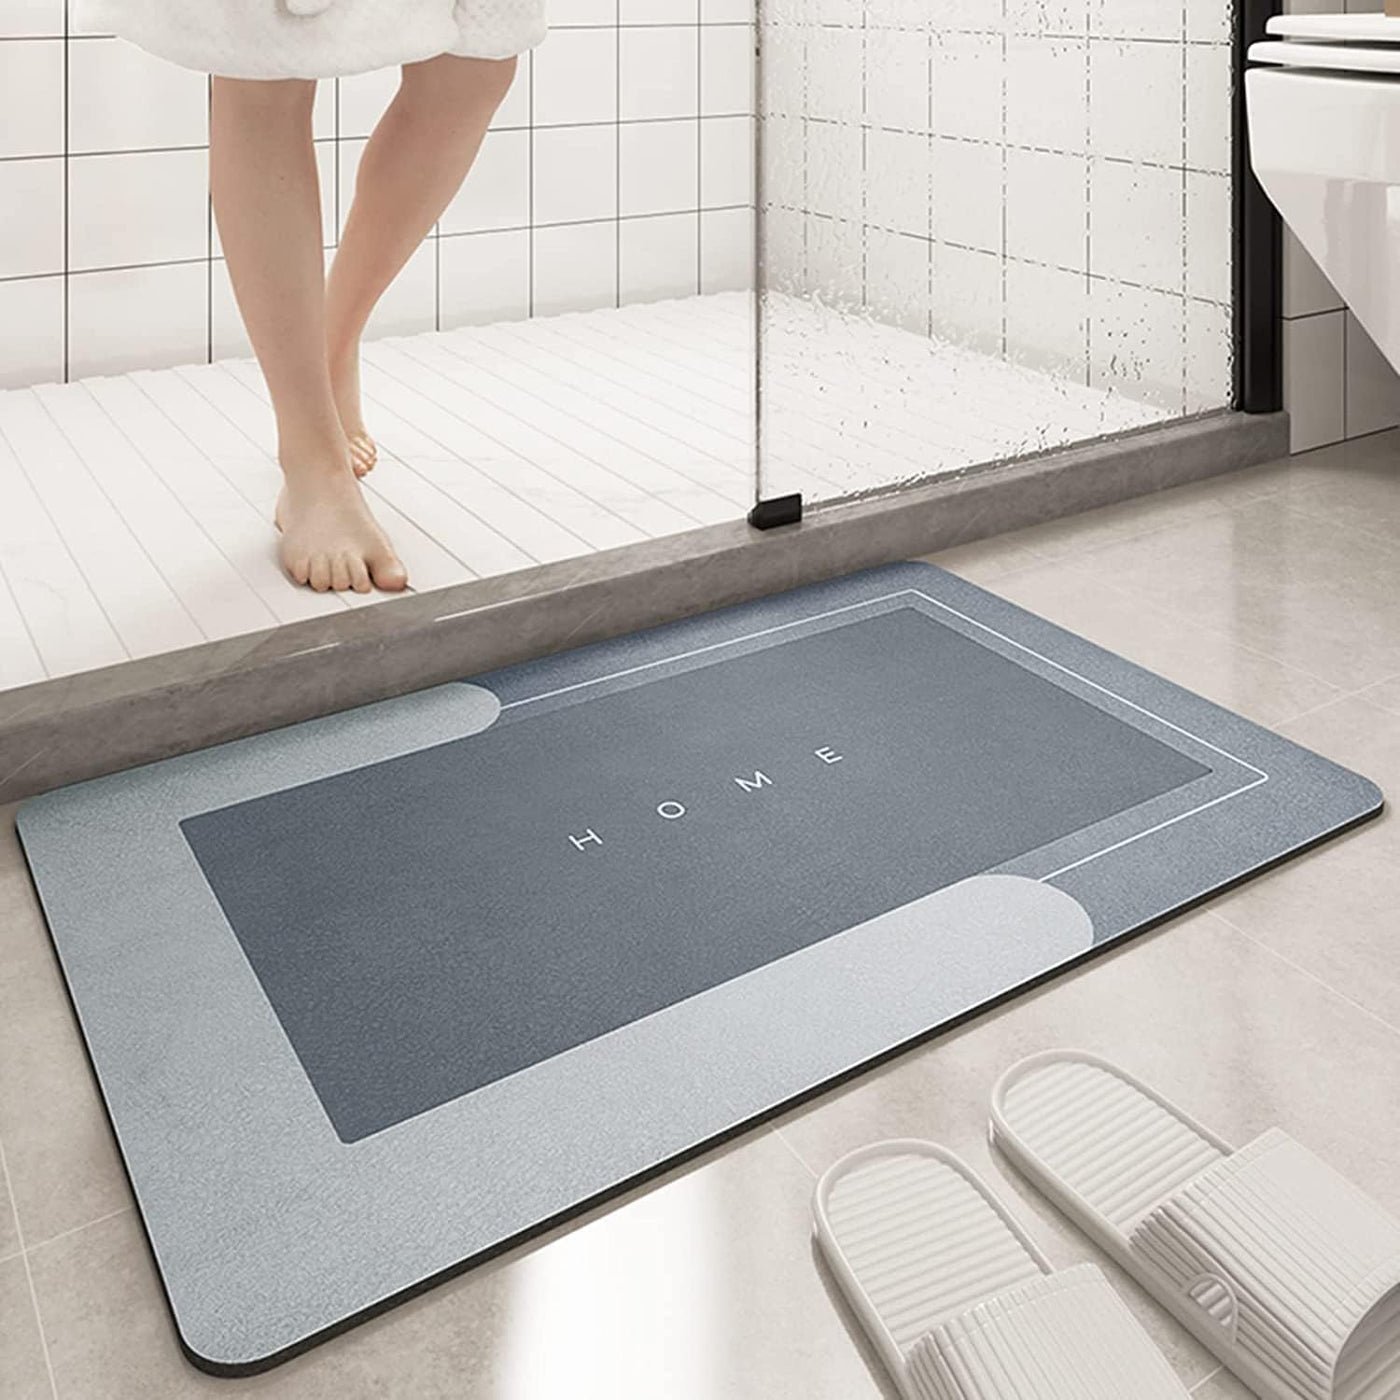 Dubkart Kitchen accessories Soft Non-Slip Super Absorbent Bathroom Kitchen Floor Mat (80X50cm)